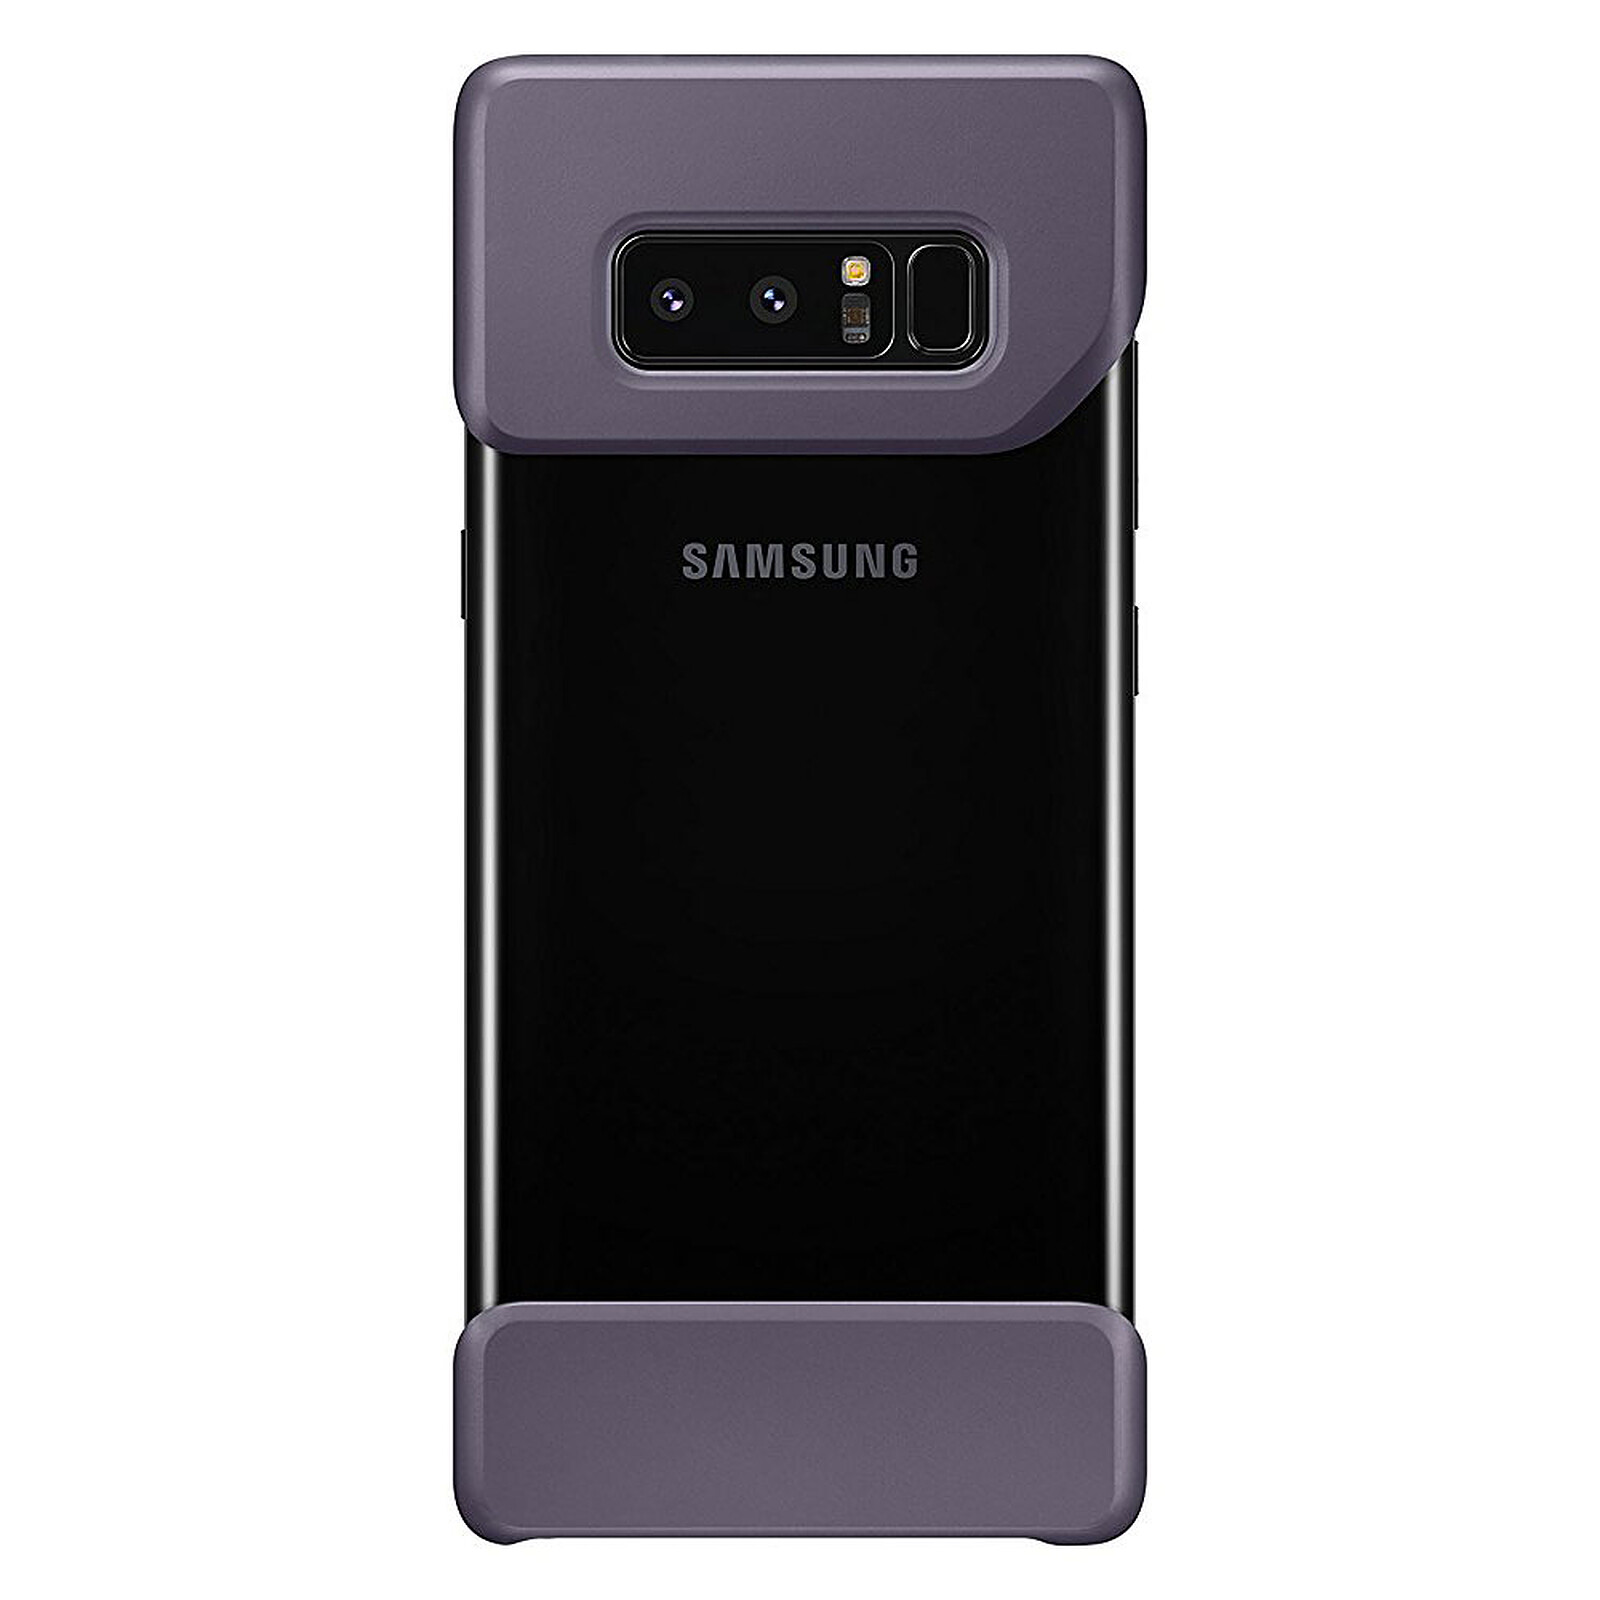 Espejismo rumor Hipócrita Samsung funda Duo Lavande Samsung Galaxy Note 8 - Funda de teléfono Samsung  en LDLC | ¡Musericordia!